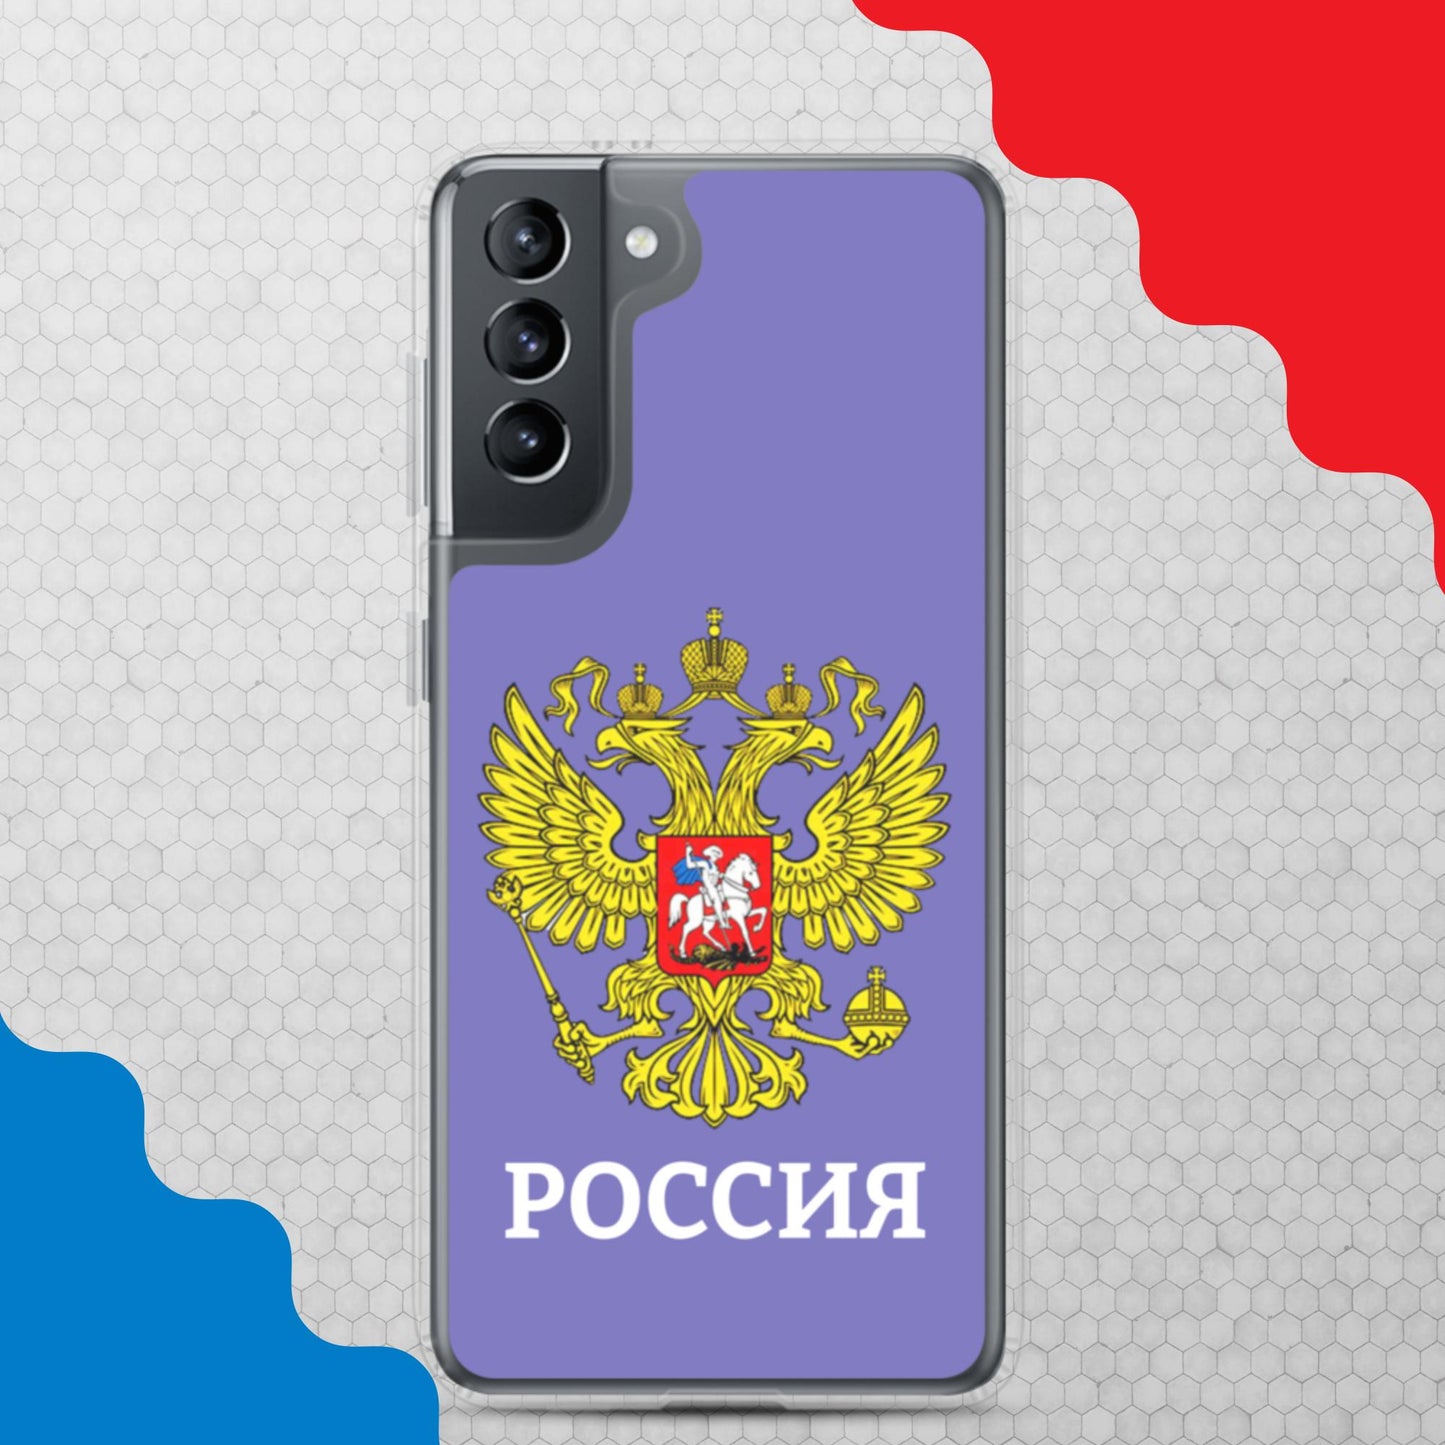 Samsung-Handyhülle mit Russland-Wappen in violett (alle Modelle)